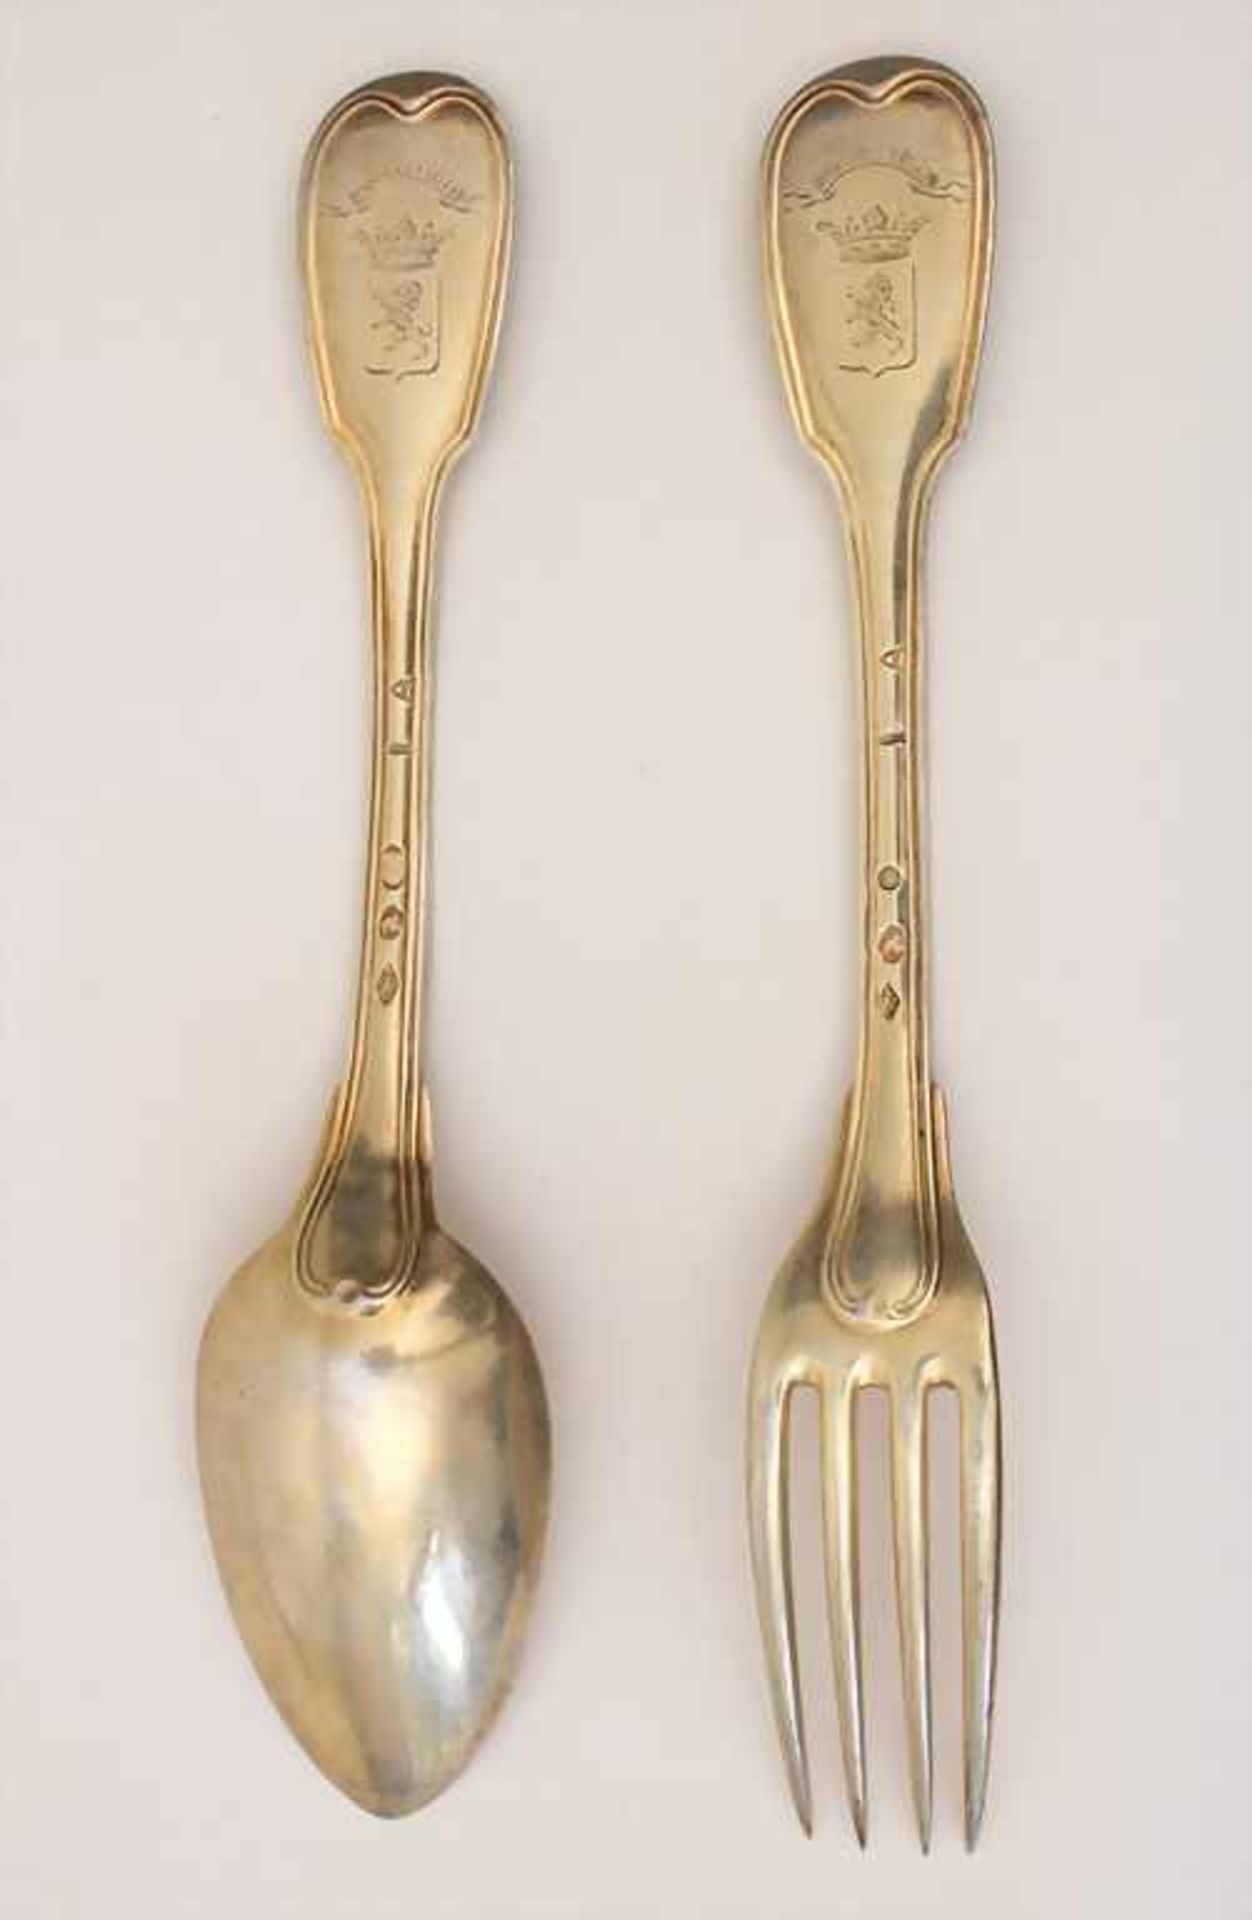 Silberbesteck für 6 Personen / 12 pieces of silver flatware, Paris, 1798-1809Material: Silber 950/ - Bild 4 aus 8